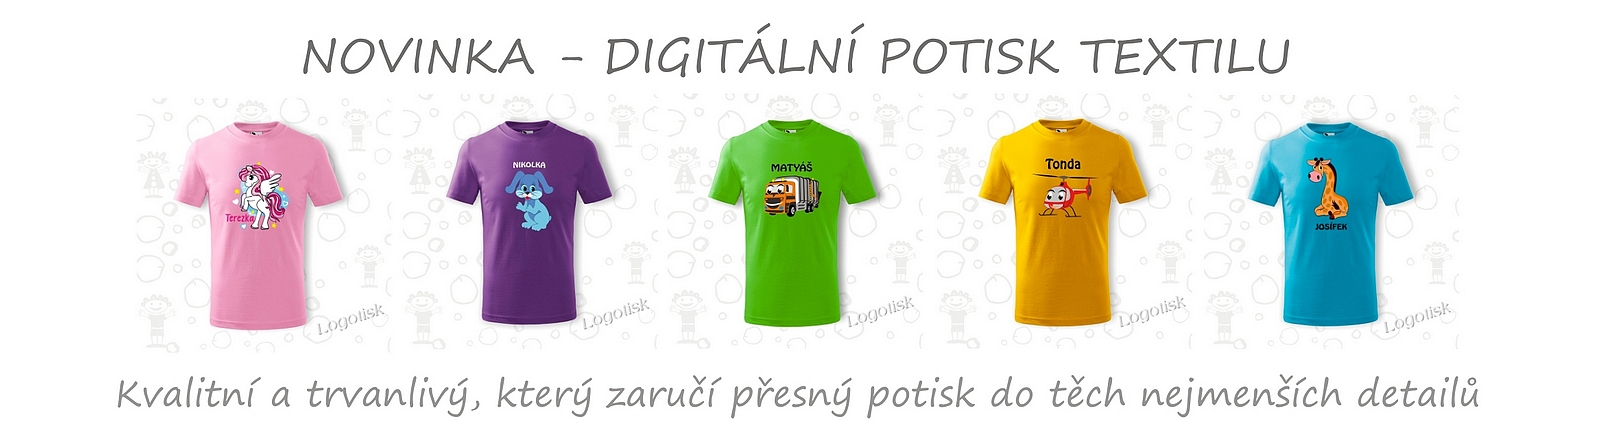 NOVINKA-digitální potisk triček a textilu